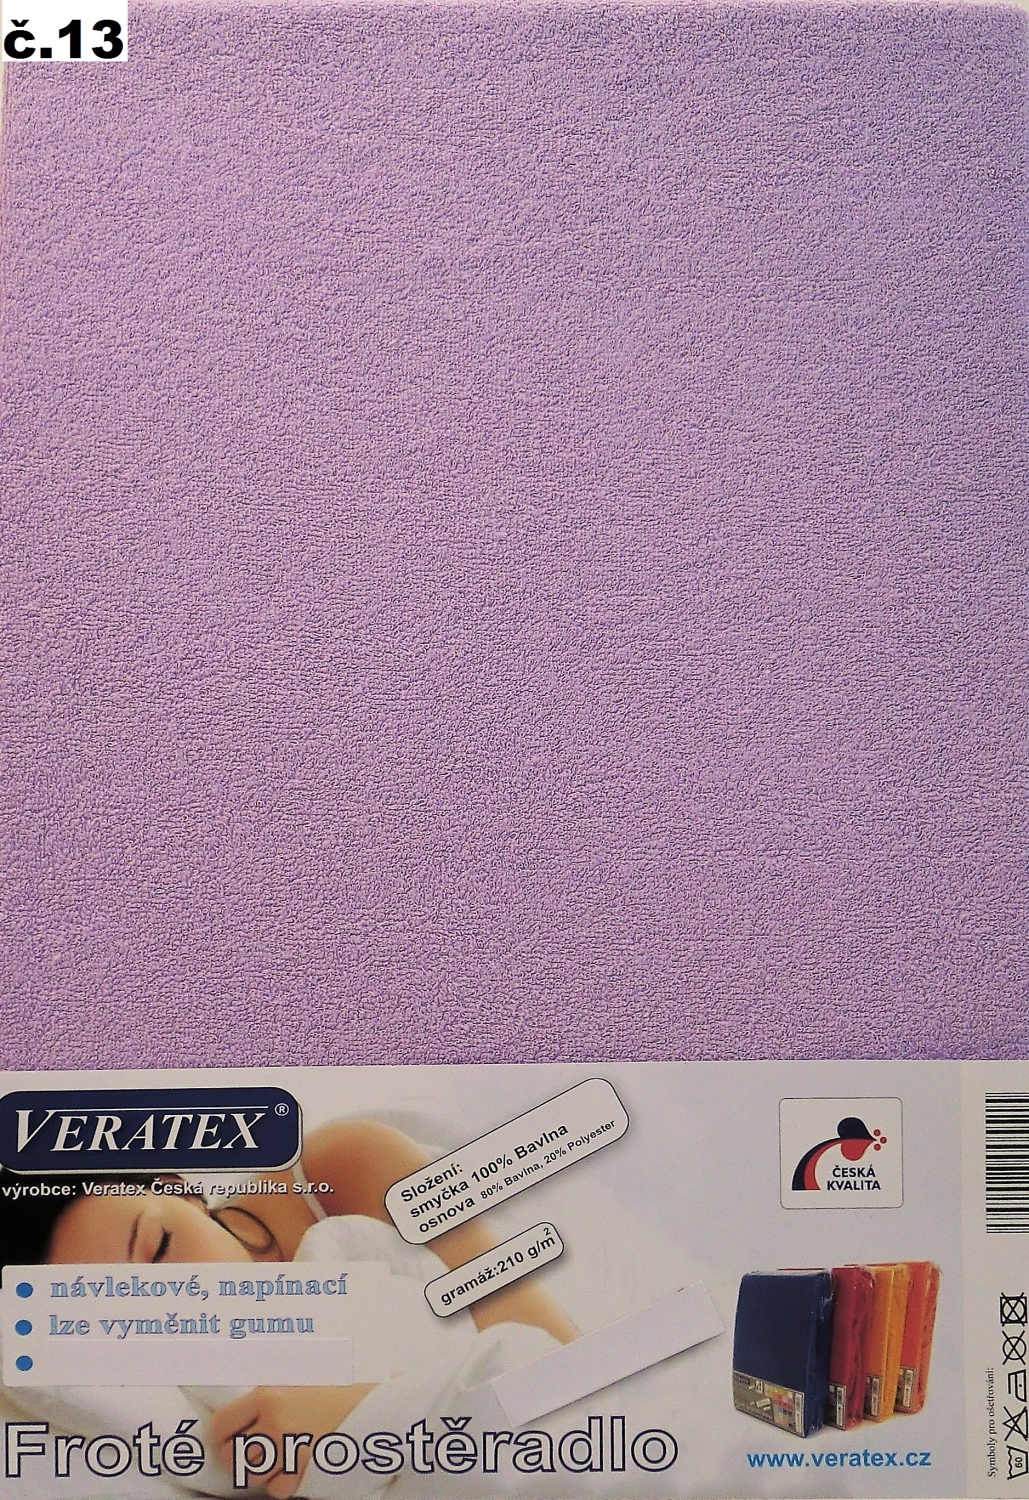 Veratex Froté prostěradlo 130x200/16 cm (č.13-fialková)